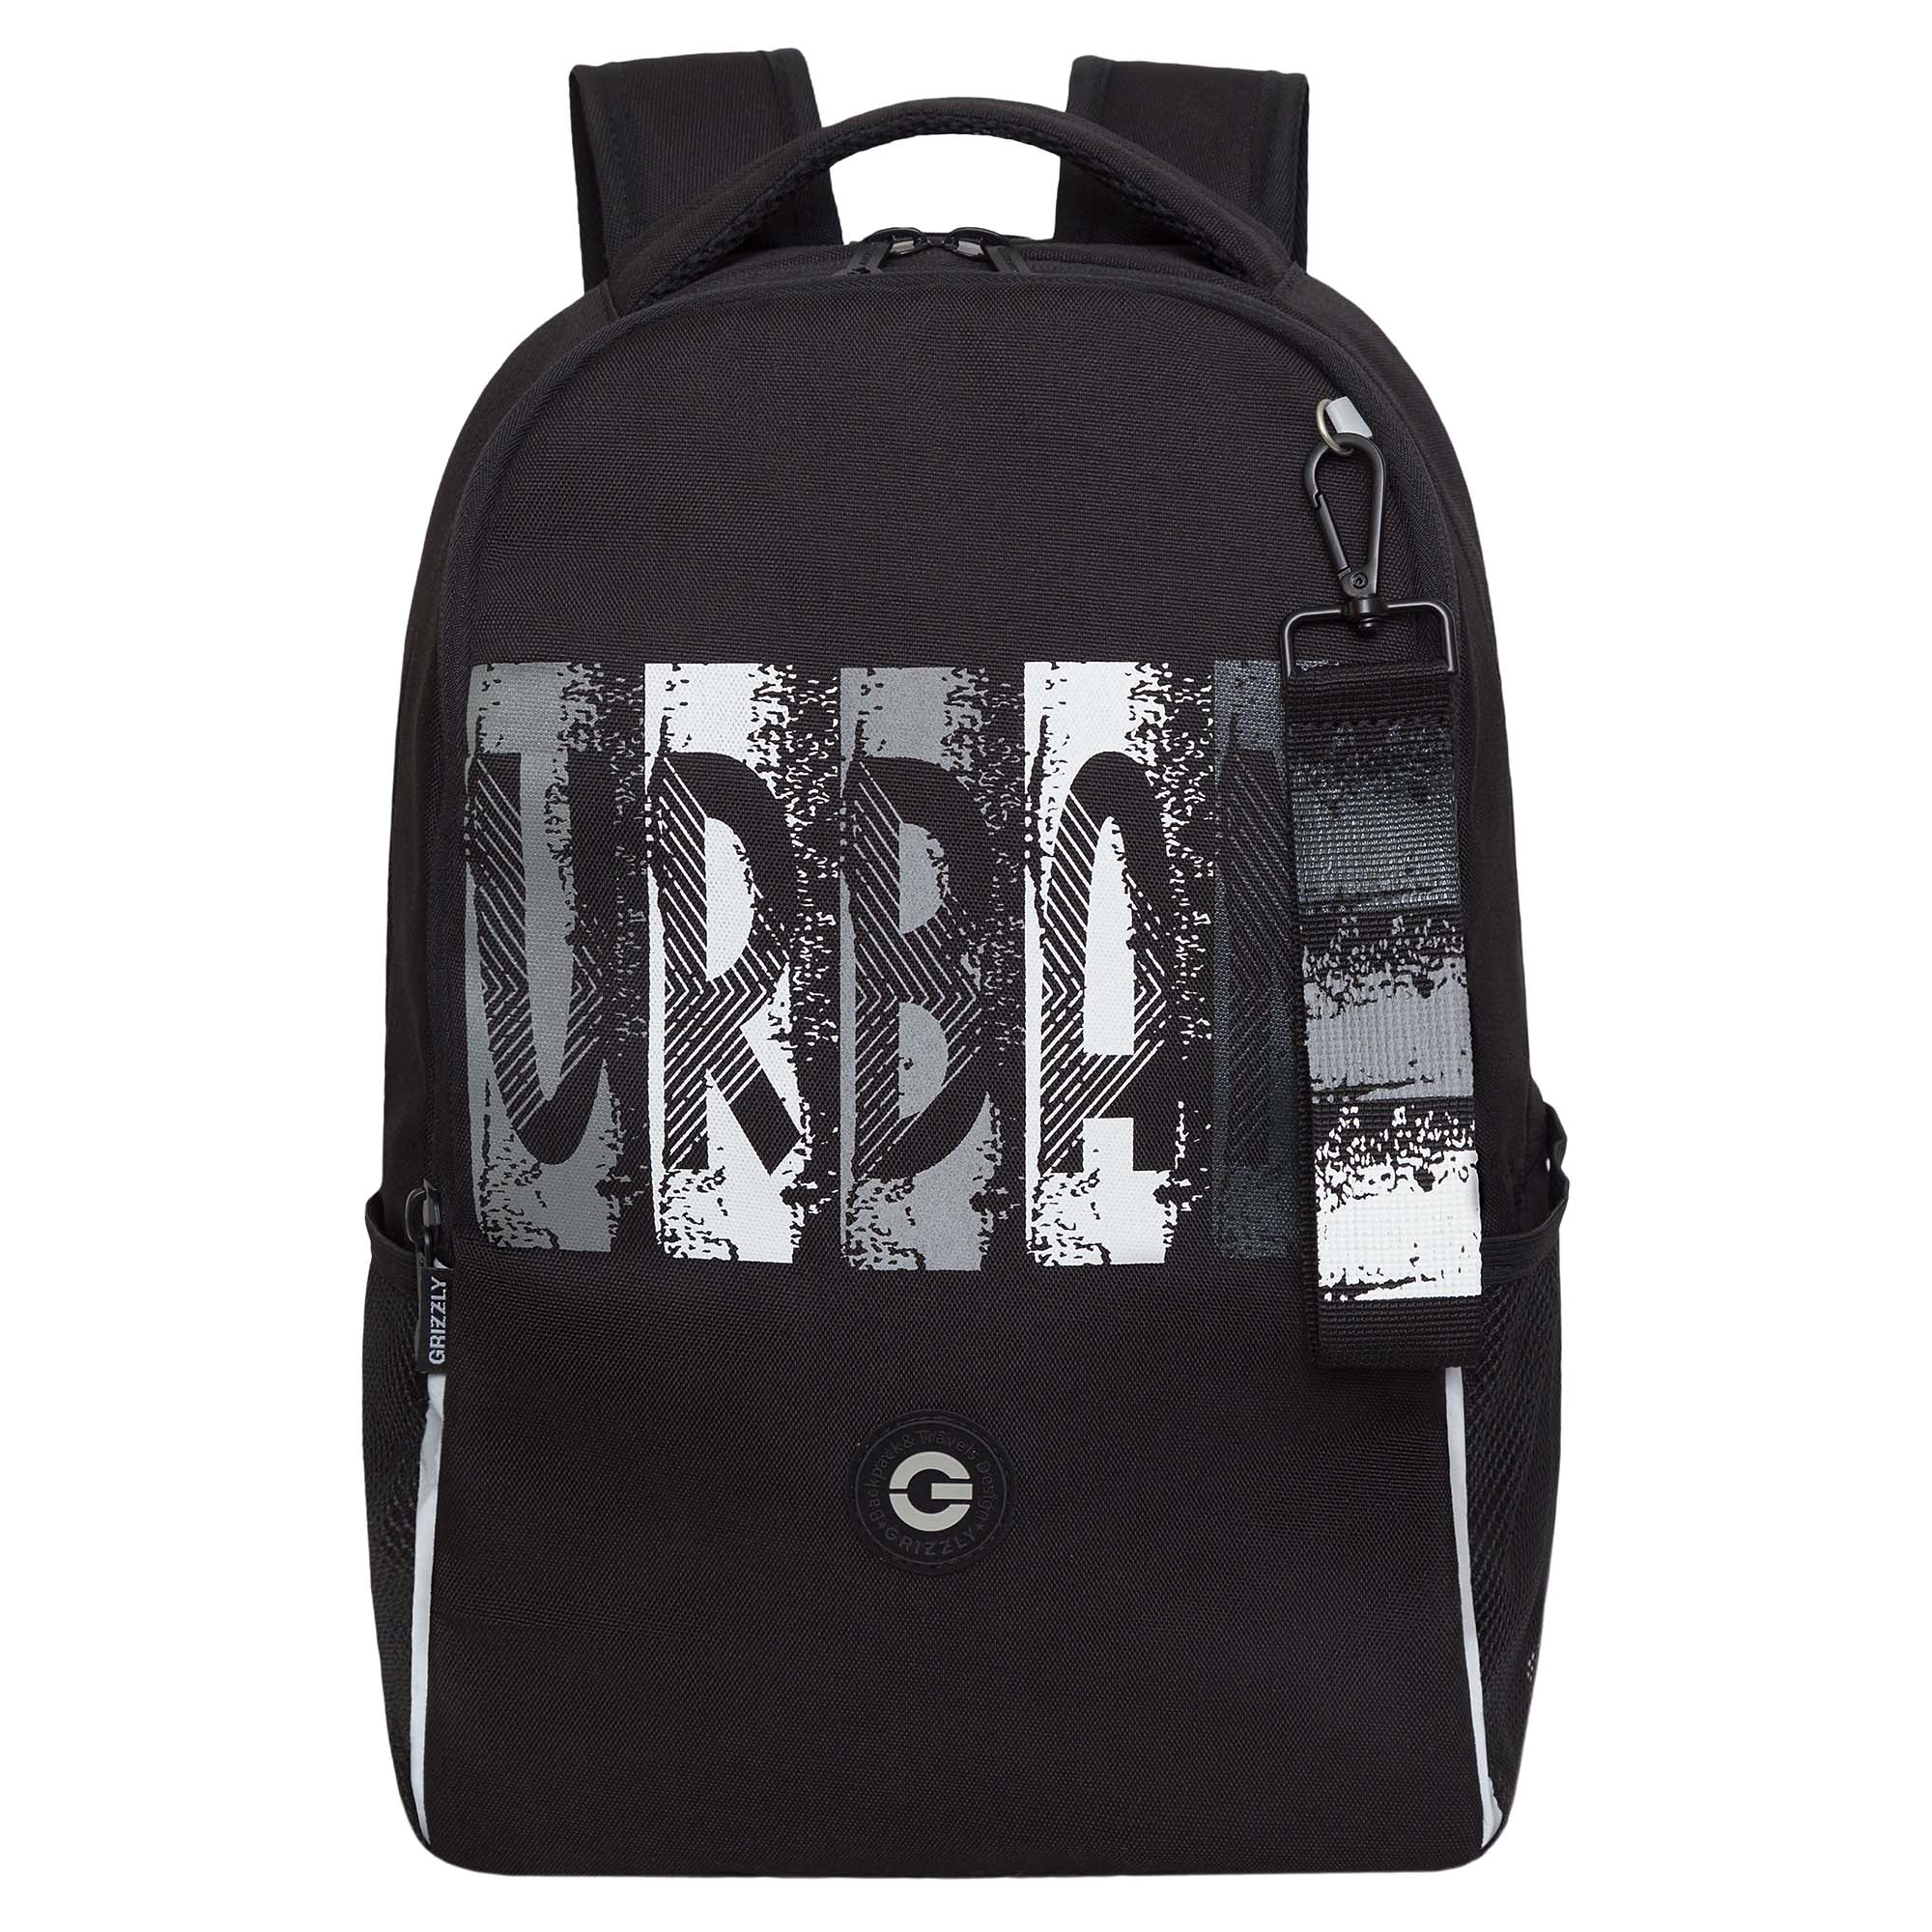 Рюкзак школьный GRIZZLY легкий с жесткой спинкой, 2 отделения, черный; серый, RB-451-3/2 рюкзак grizzly школьный для девочки rg 367 3 2 серый